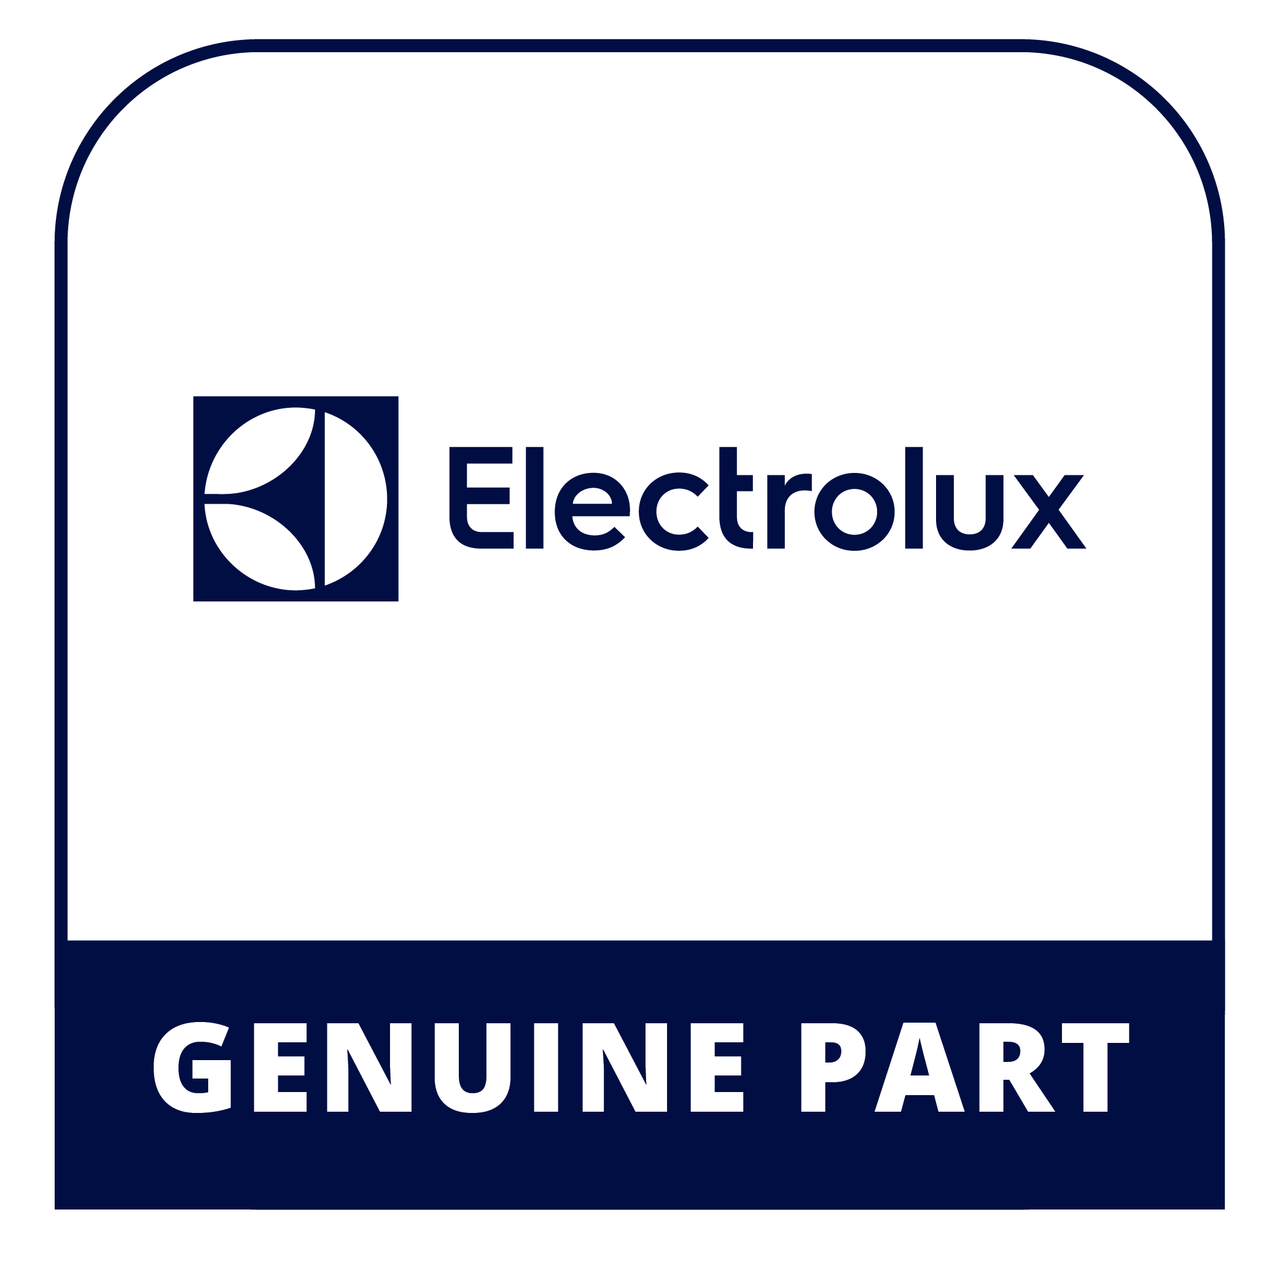 Frigidaire - Electrolux 5304482760 12X.25X.032 Tube - Genuine Electrolux Part